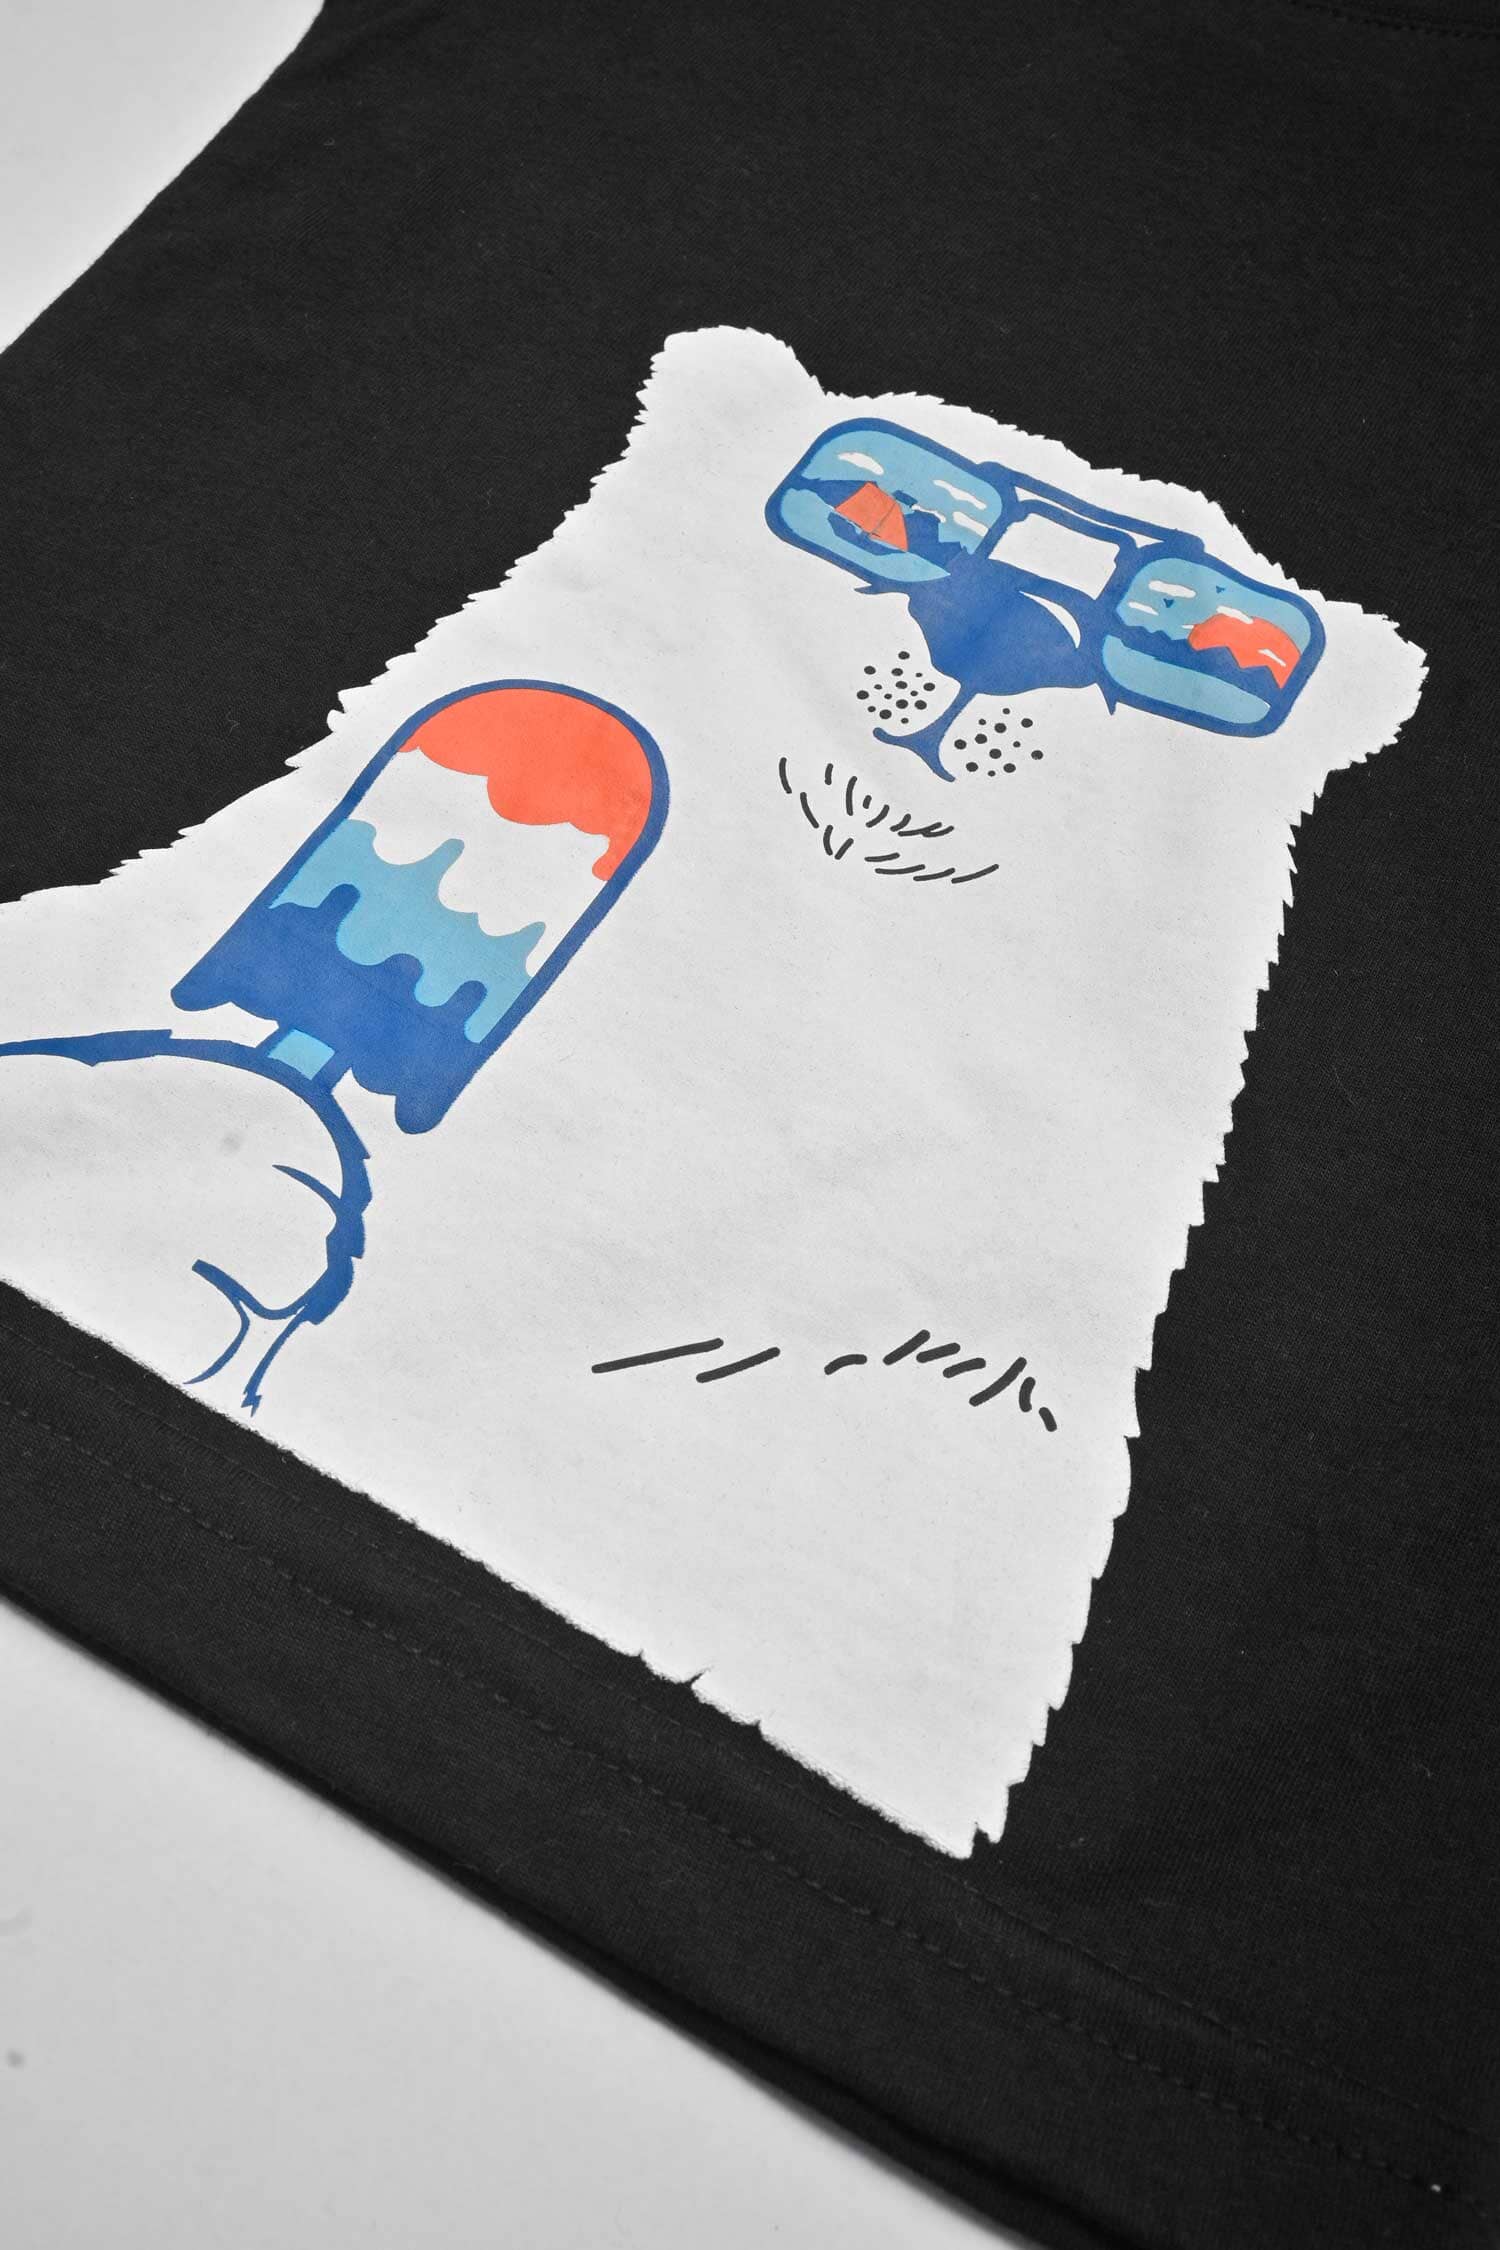 Polo Republica Boy's Cool Polar Bear Printed Tee Shirt